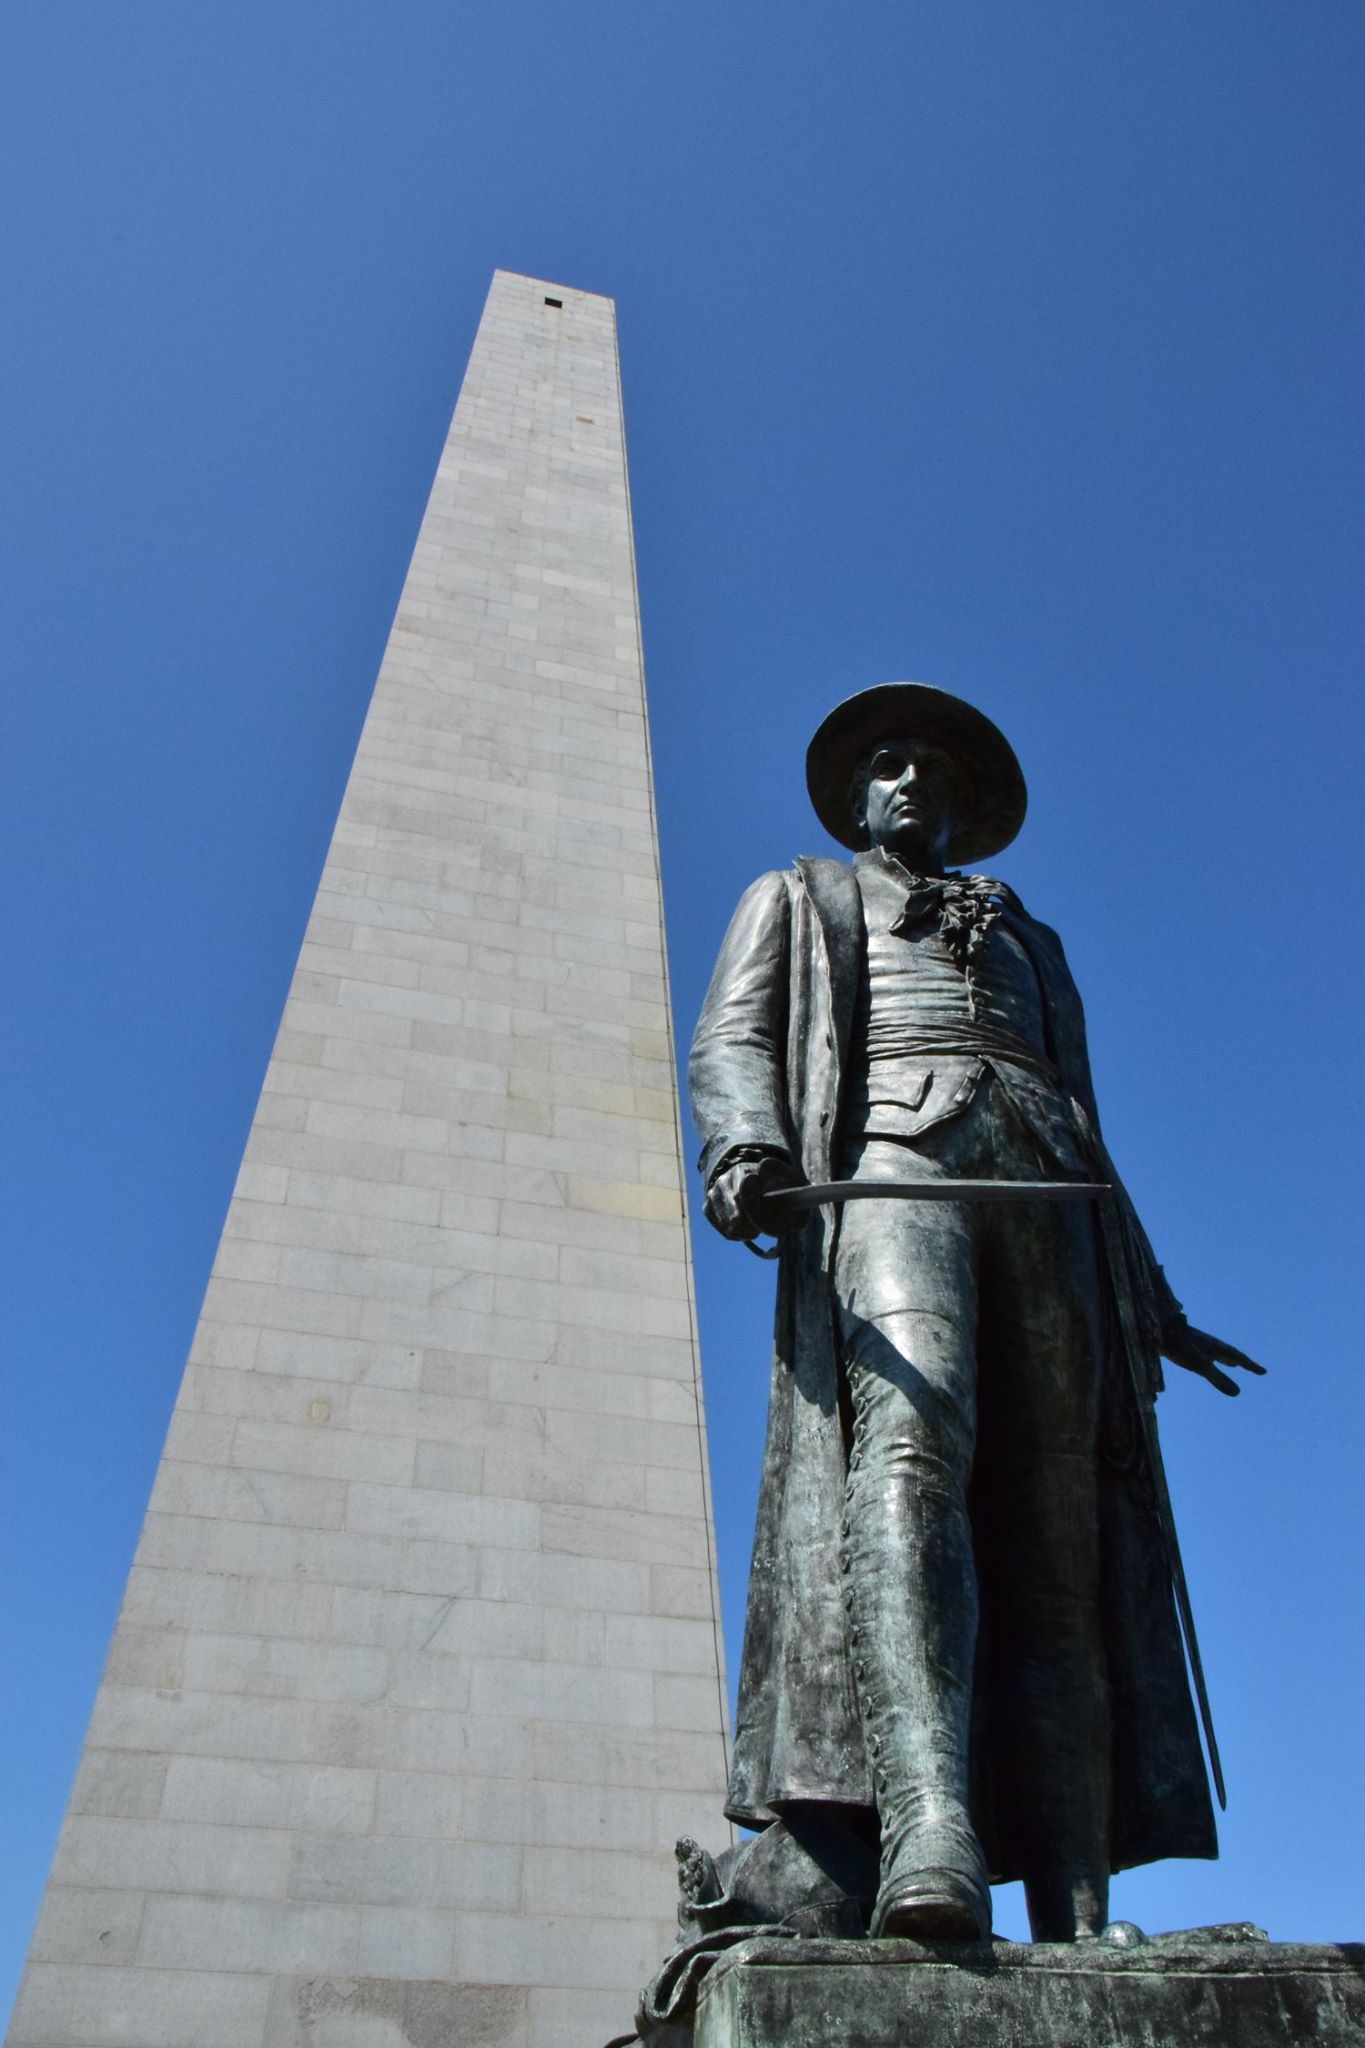 Bunker Hill Monument - colonel William Prescott